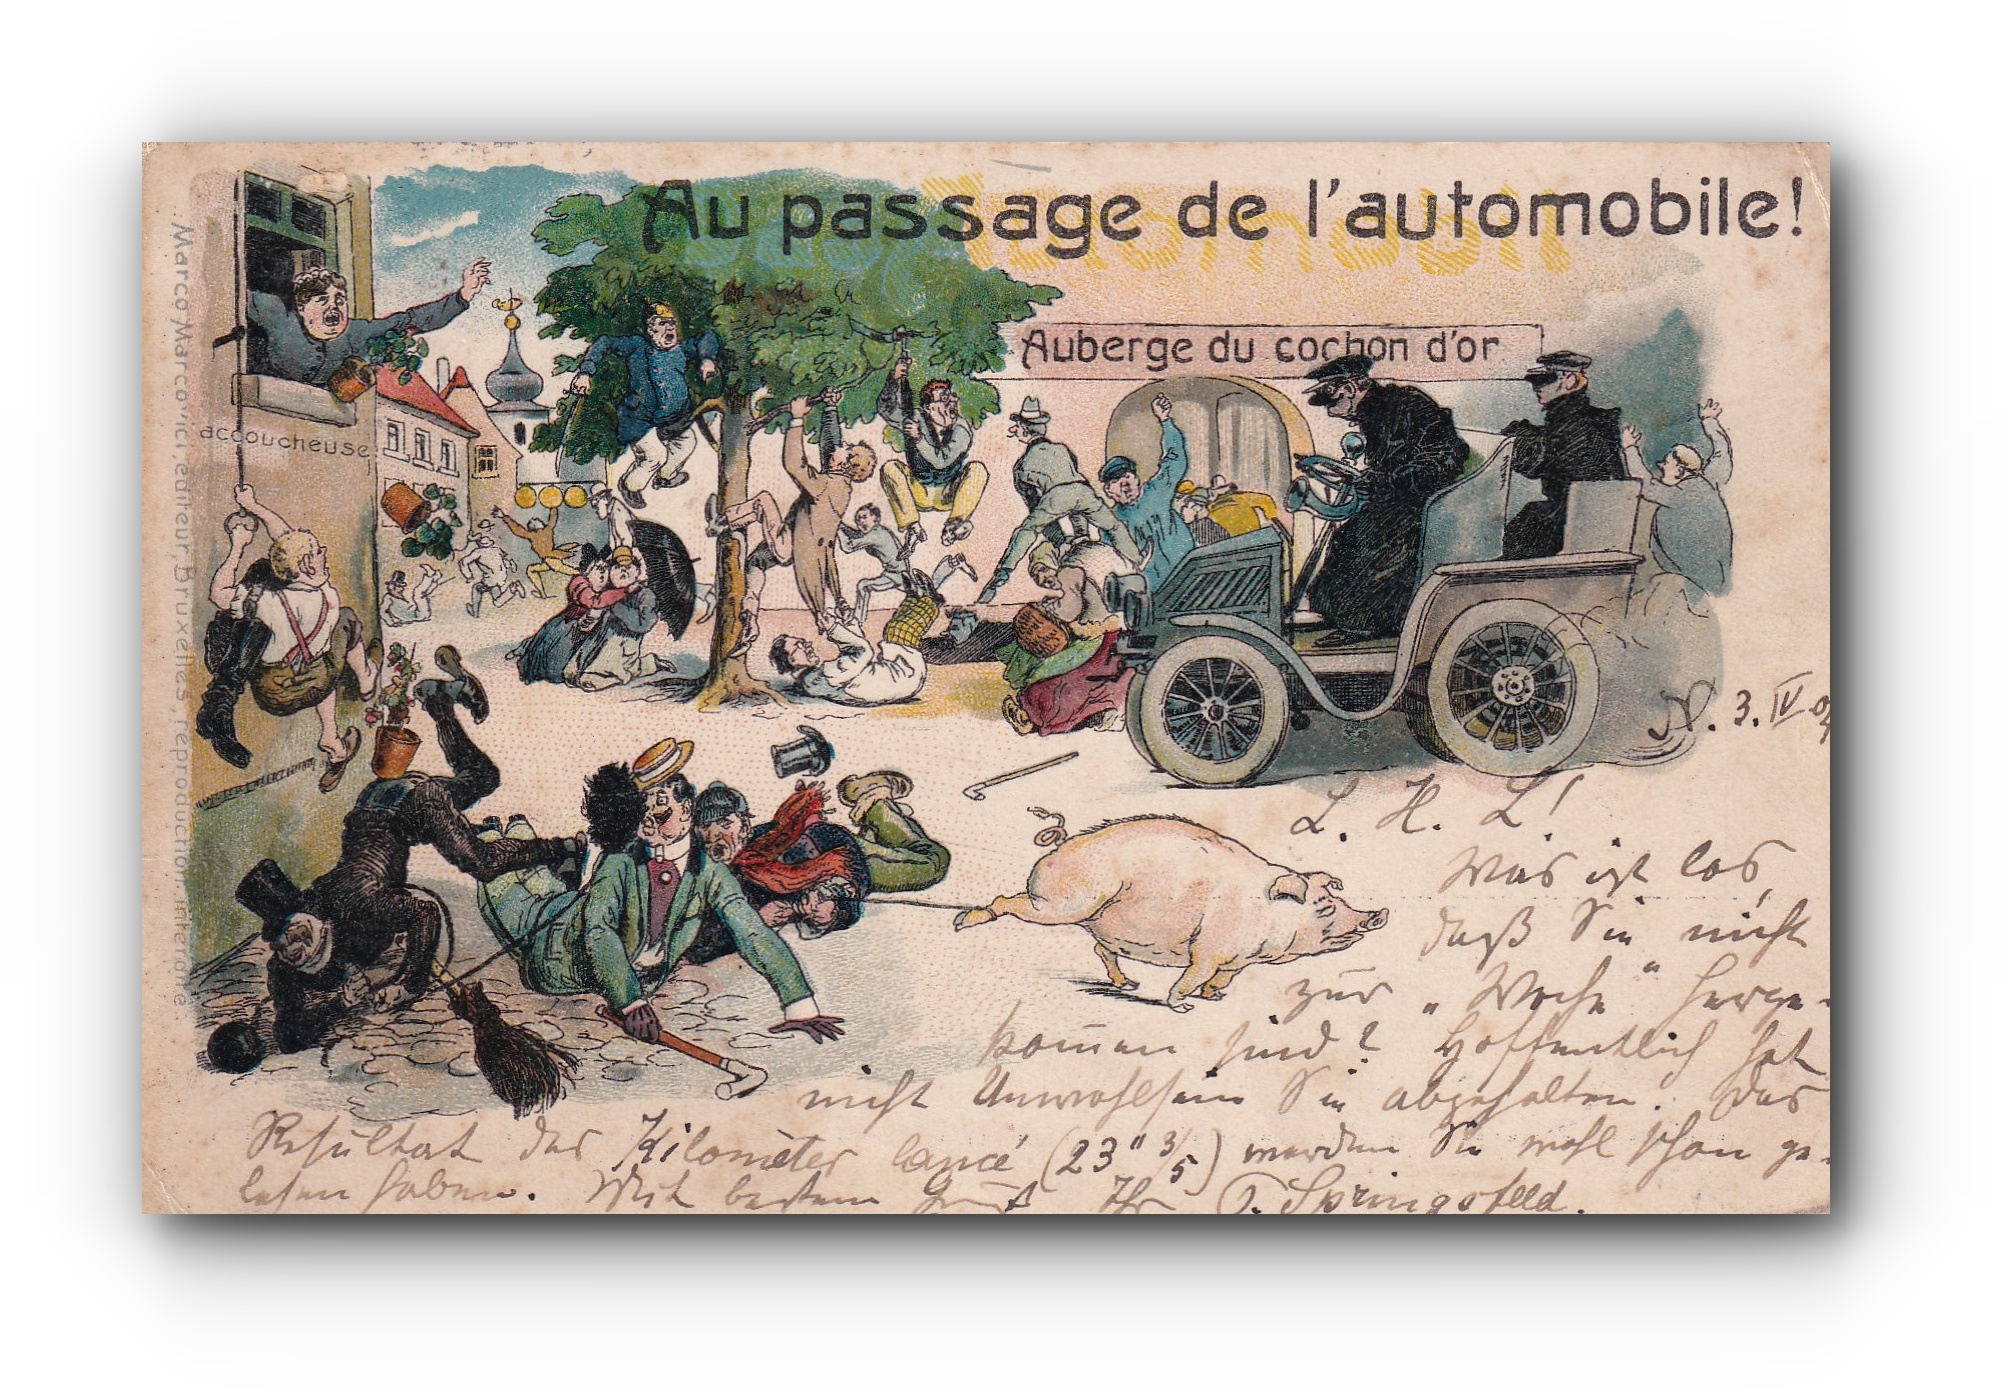 Au passage de l'automobile - 03.04.1904 - Bei der Durchfahrt des Automobils -When the car passes through